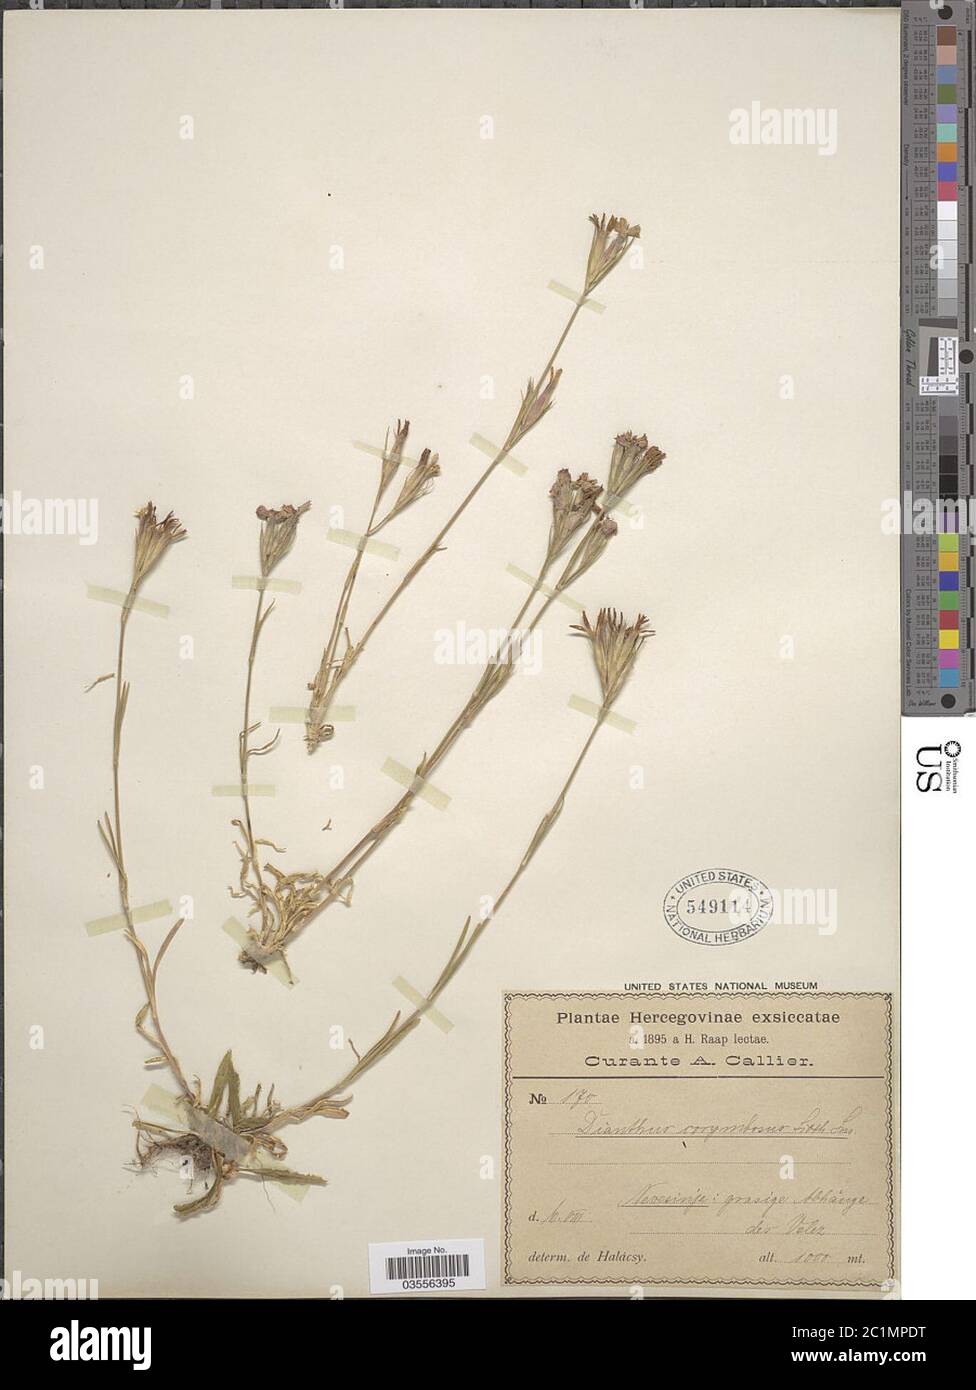 Dianthus corymbosus Sm Dianthus corymbosus Sm. Stock Photo